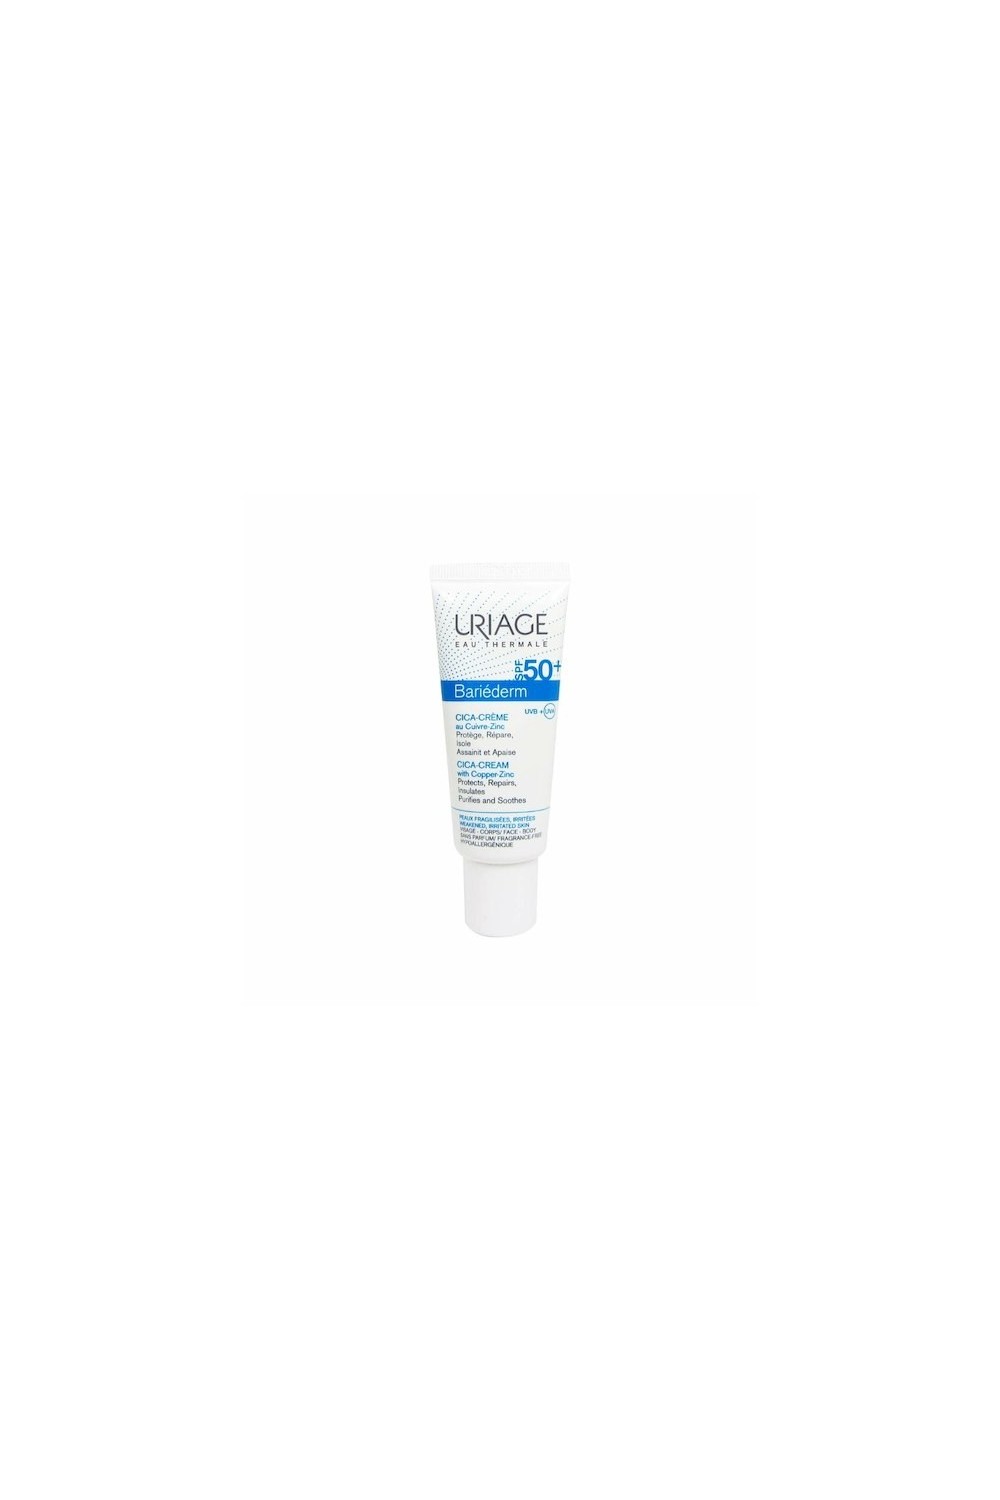 Uriage Bariéderm Cica-Cream Spf50+ 40ml